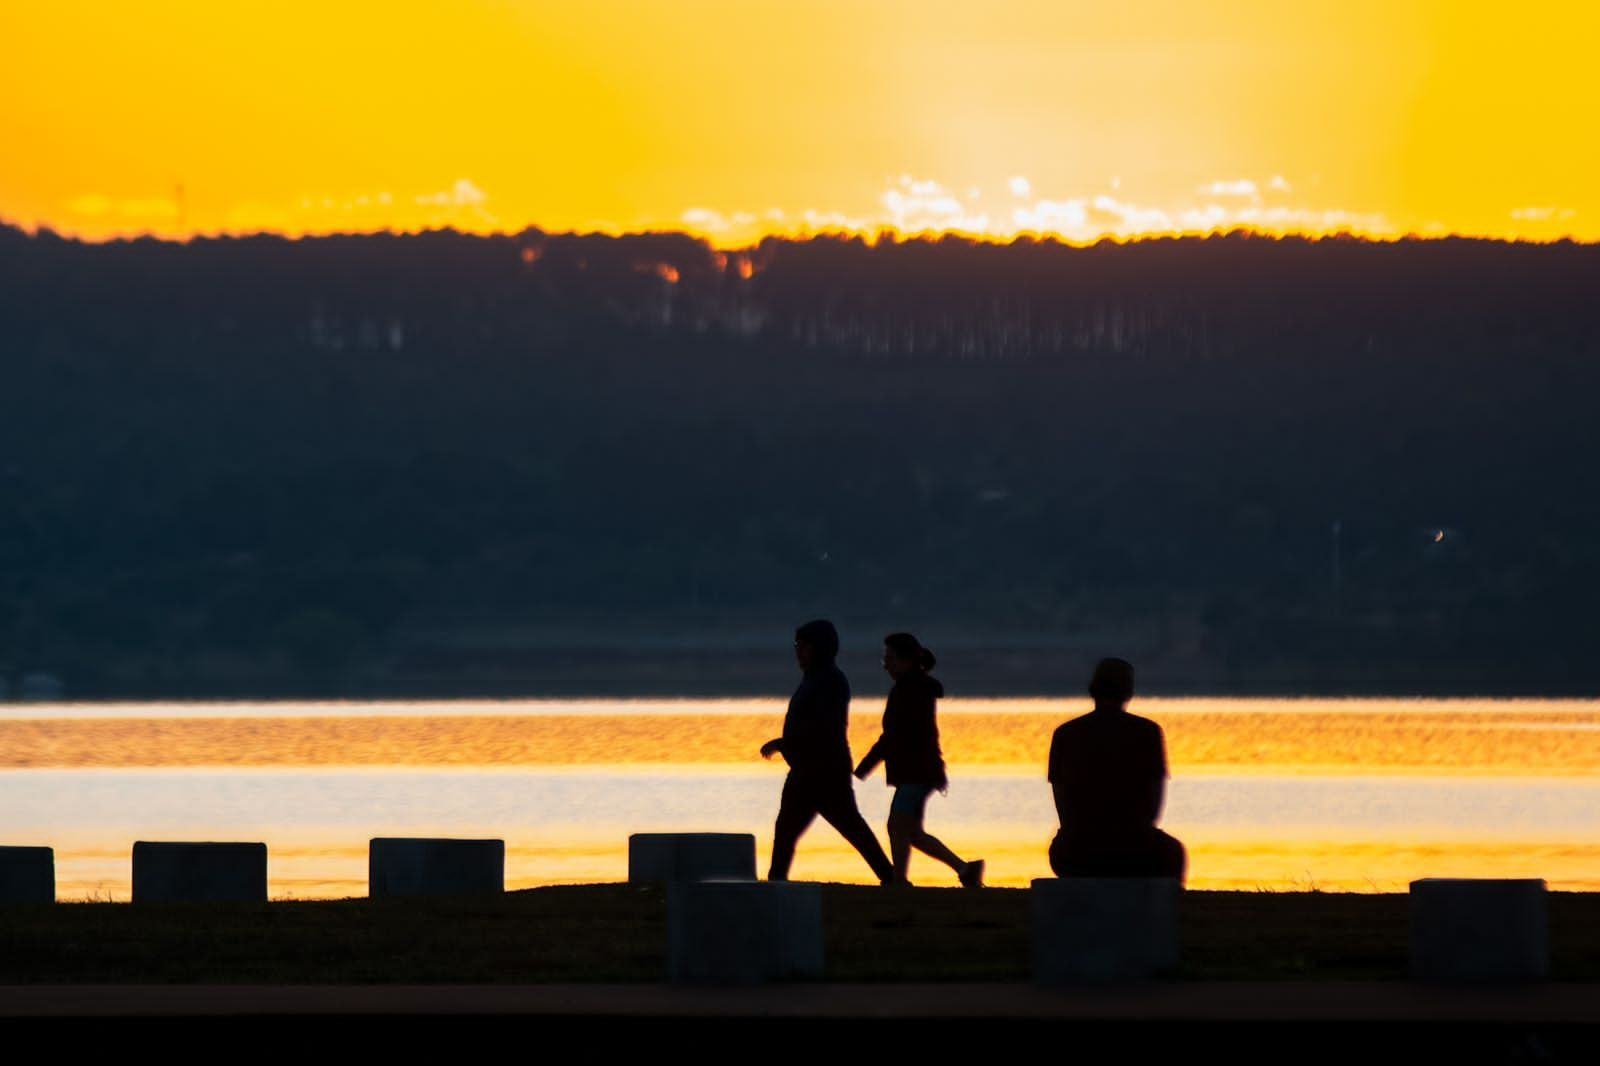 Pessoas caminham na orla do Lago Paranoá. O sol nasce ao fundo da imagem calor